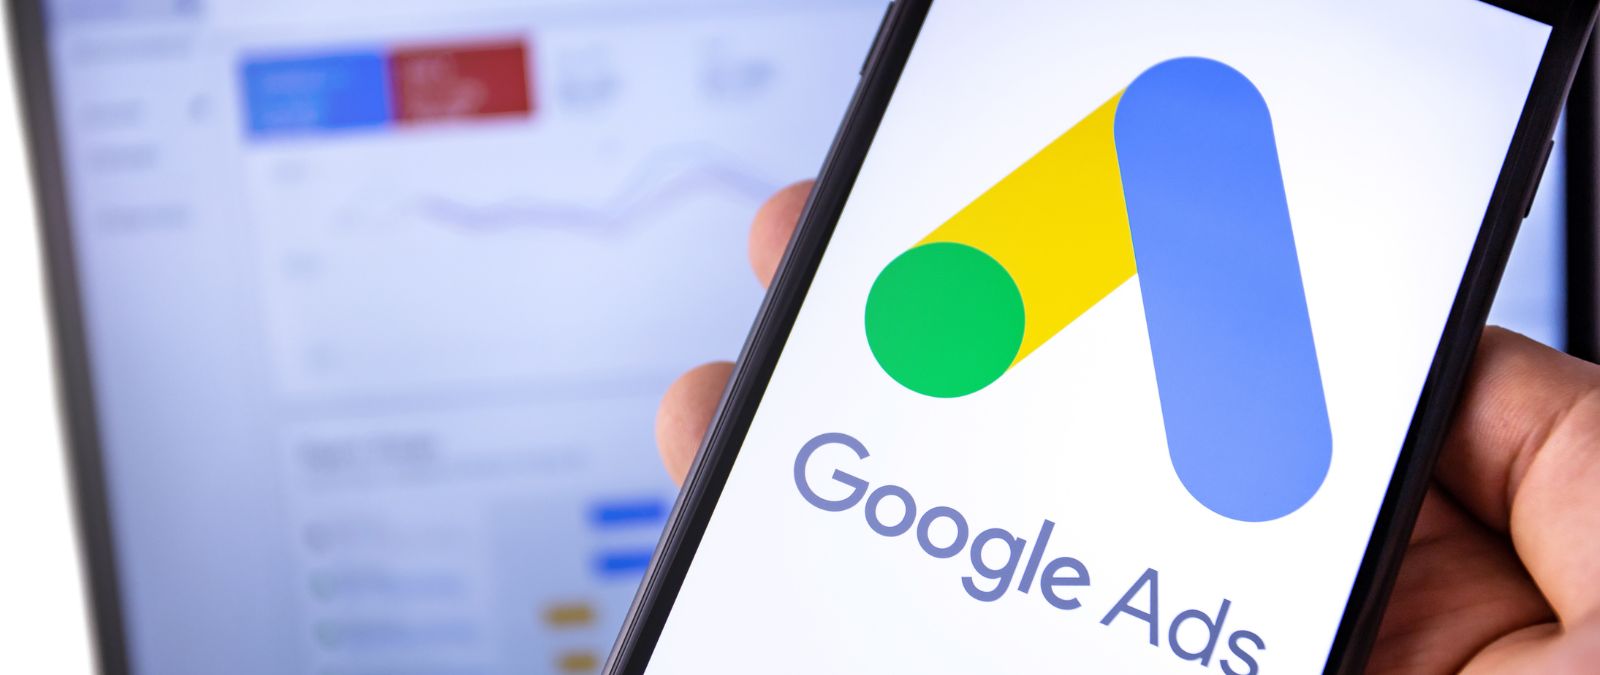 Google-Ads-Agentur: Ein Smartphone vor einem Laptop mit Google-Ads